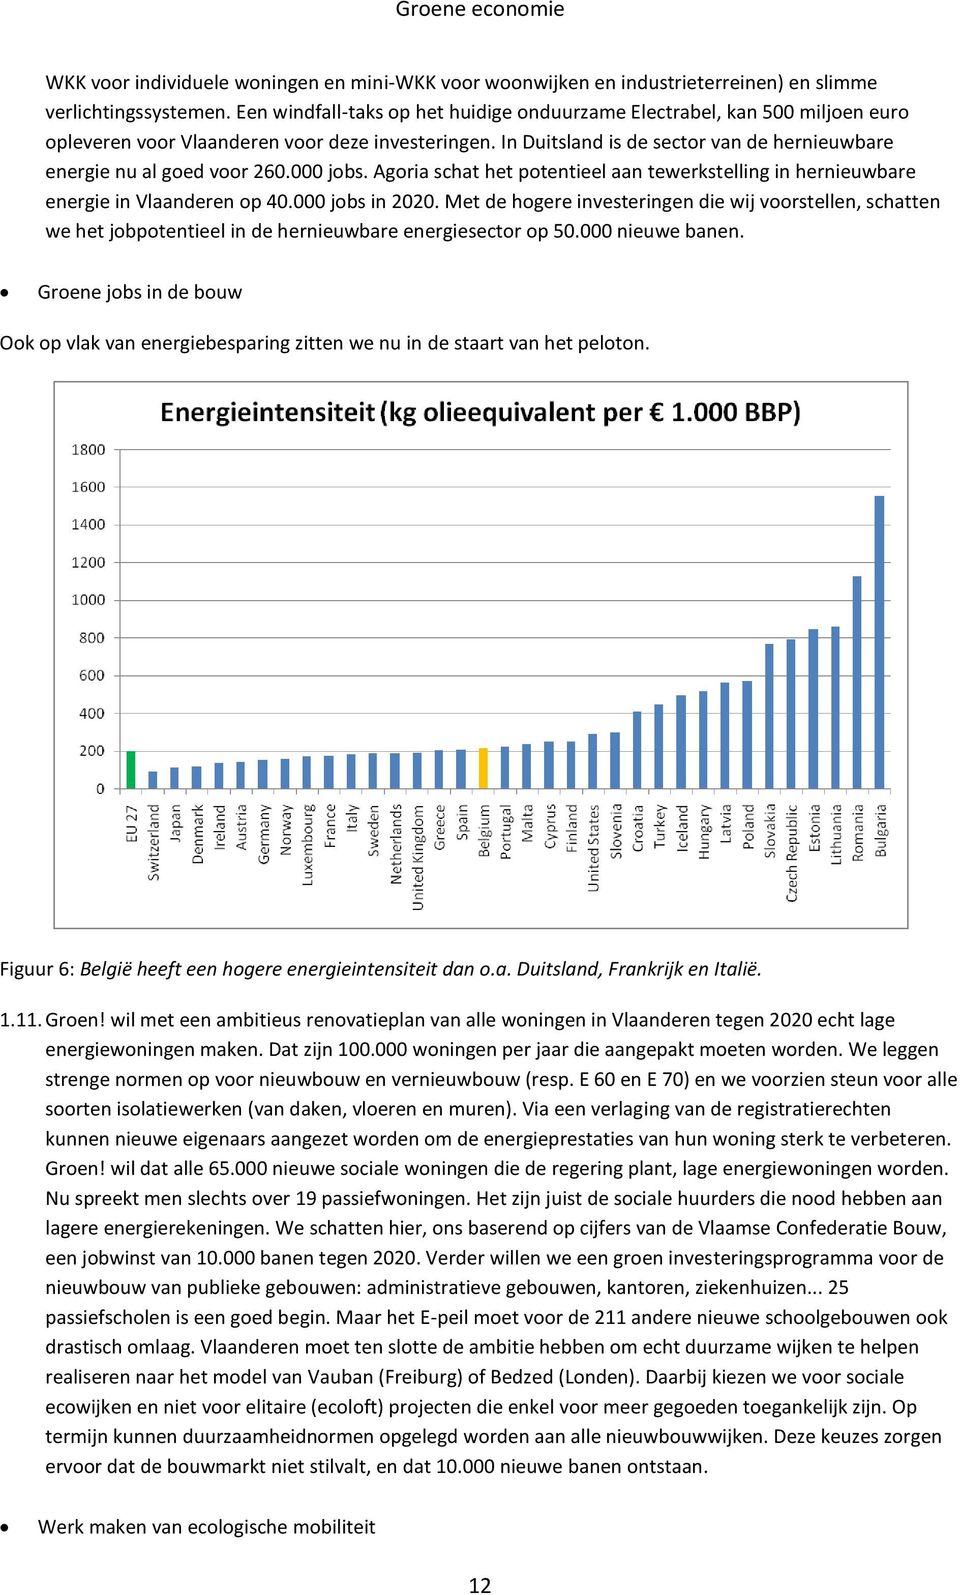 In Duitsland is de sector van de hernieuwbare energie nu al goed voor 260.000 jobs. Agoria schat het potentieel aan tewerkstelling in hernieuwbare energie in Vlaanderen op 40.000 jobs in 2020.